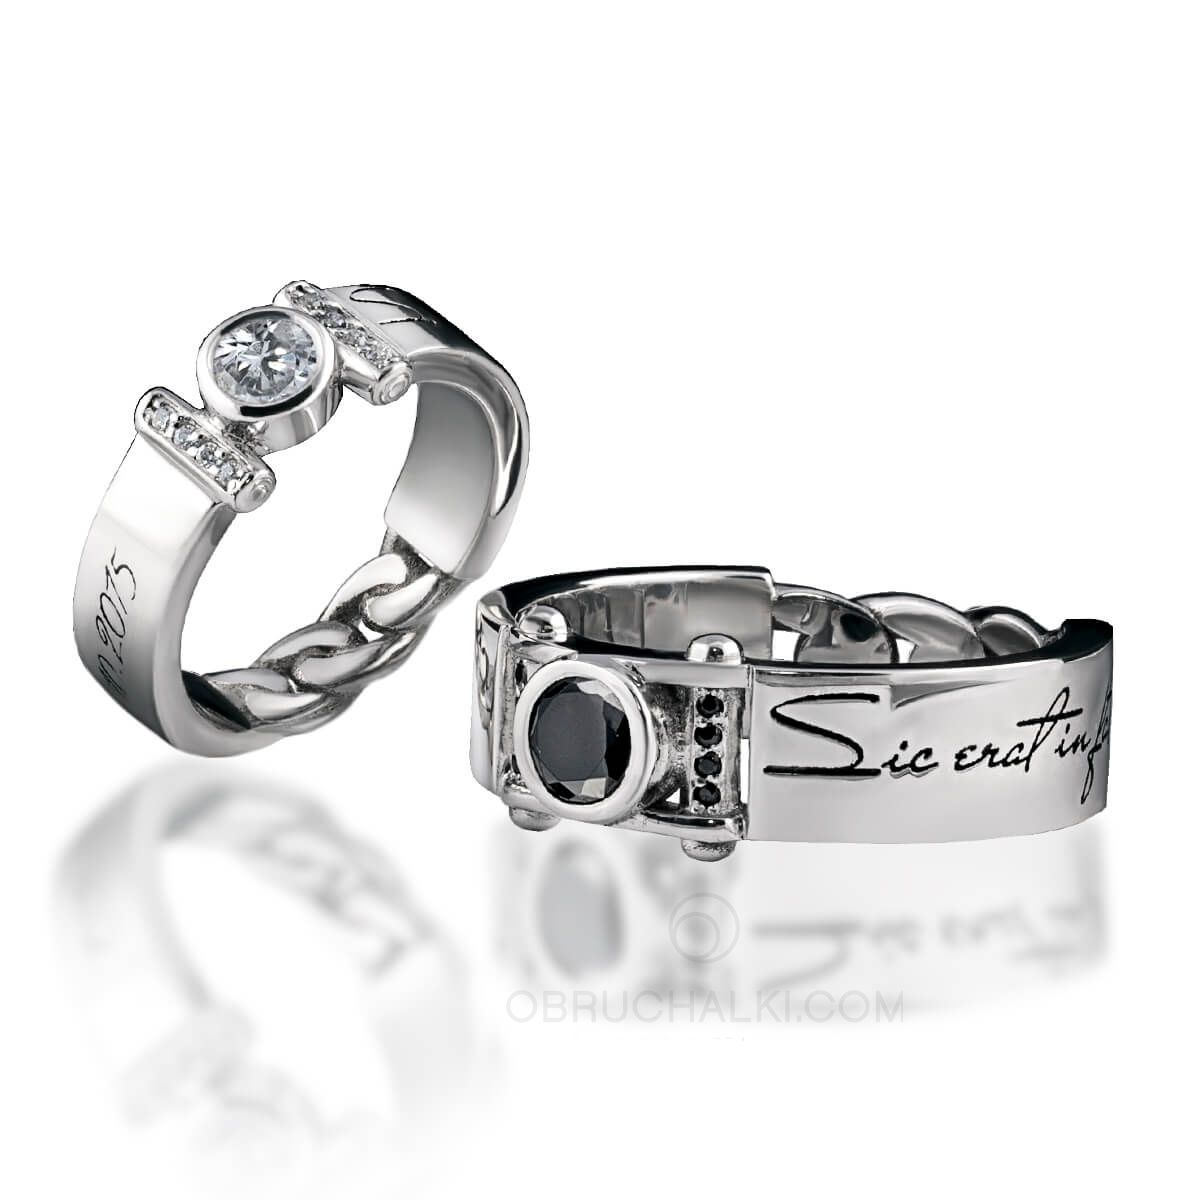 Парные обручальные кольца с черным бриллиантом DARK PRINCE на заказ из белого и желтого золота, серебра, платины или своего металла